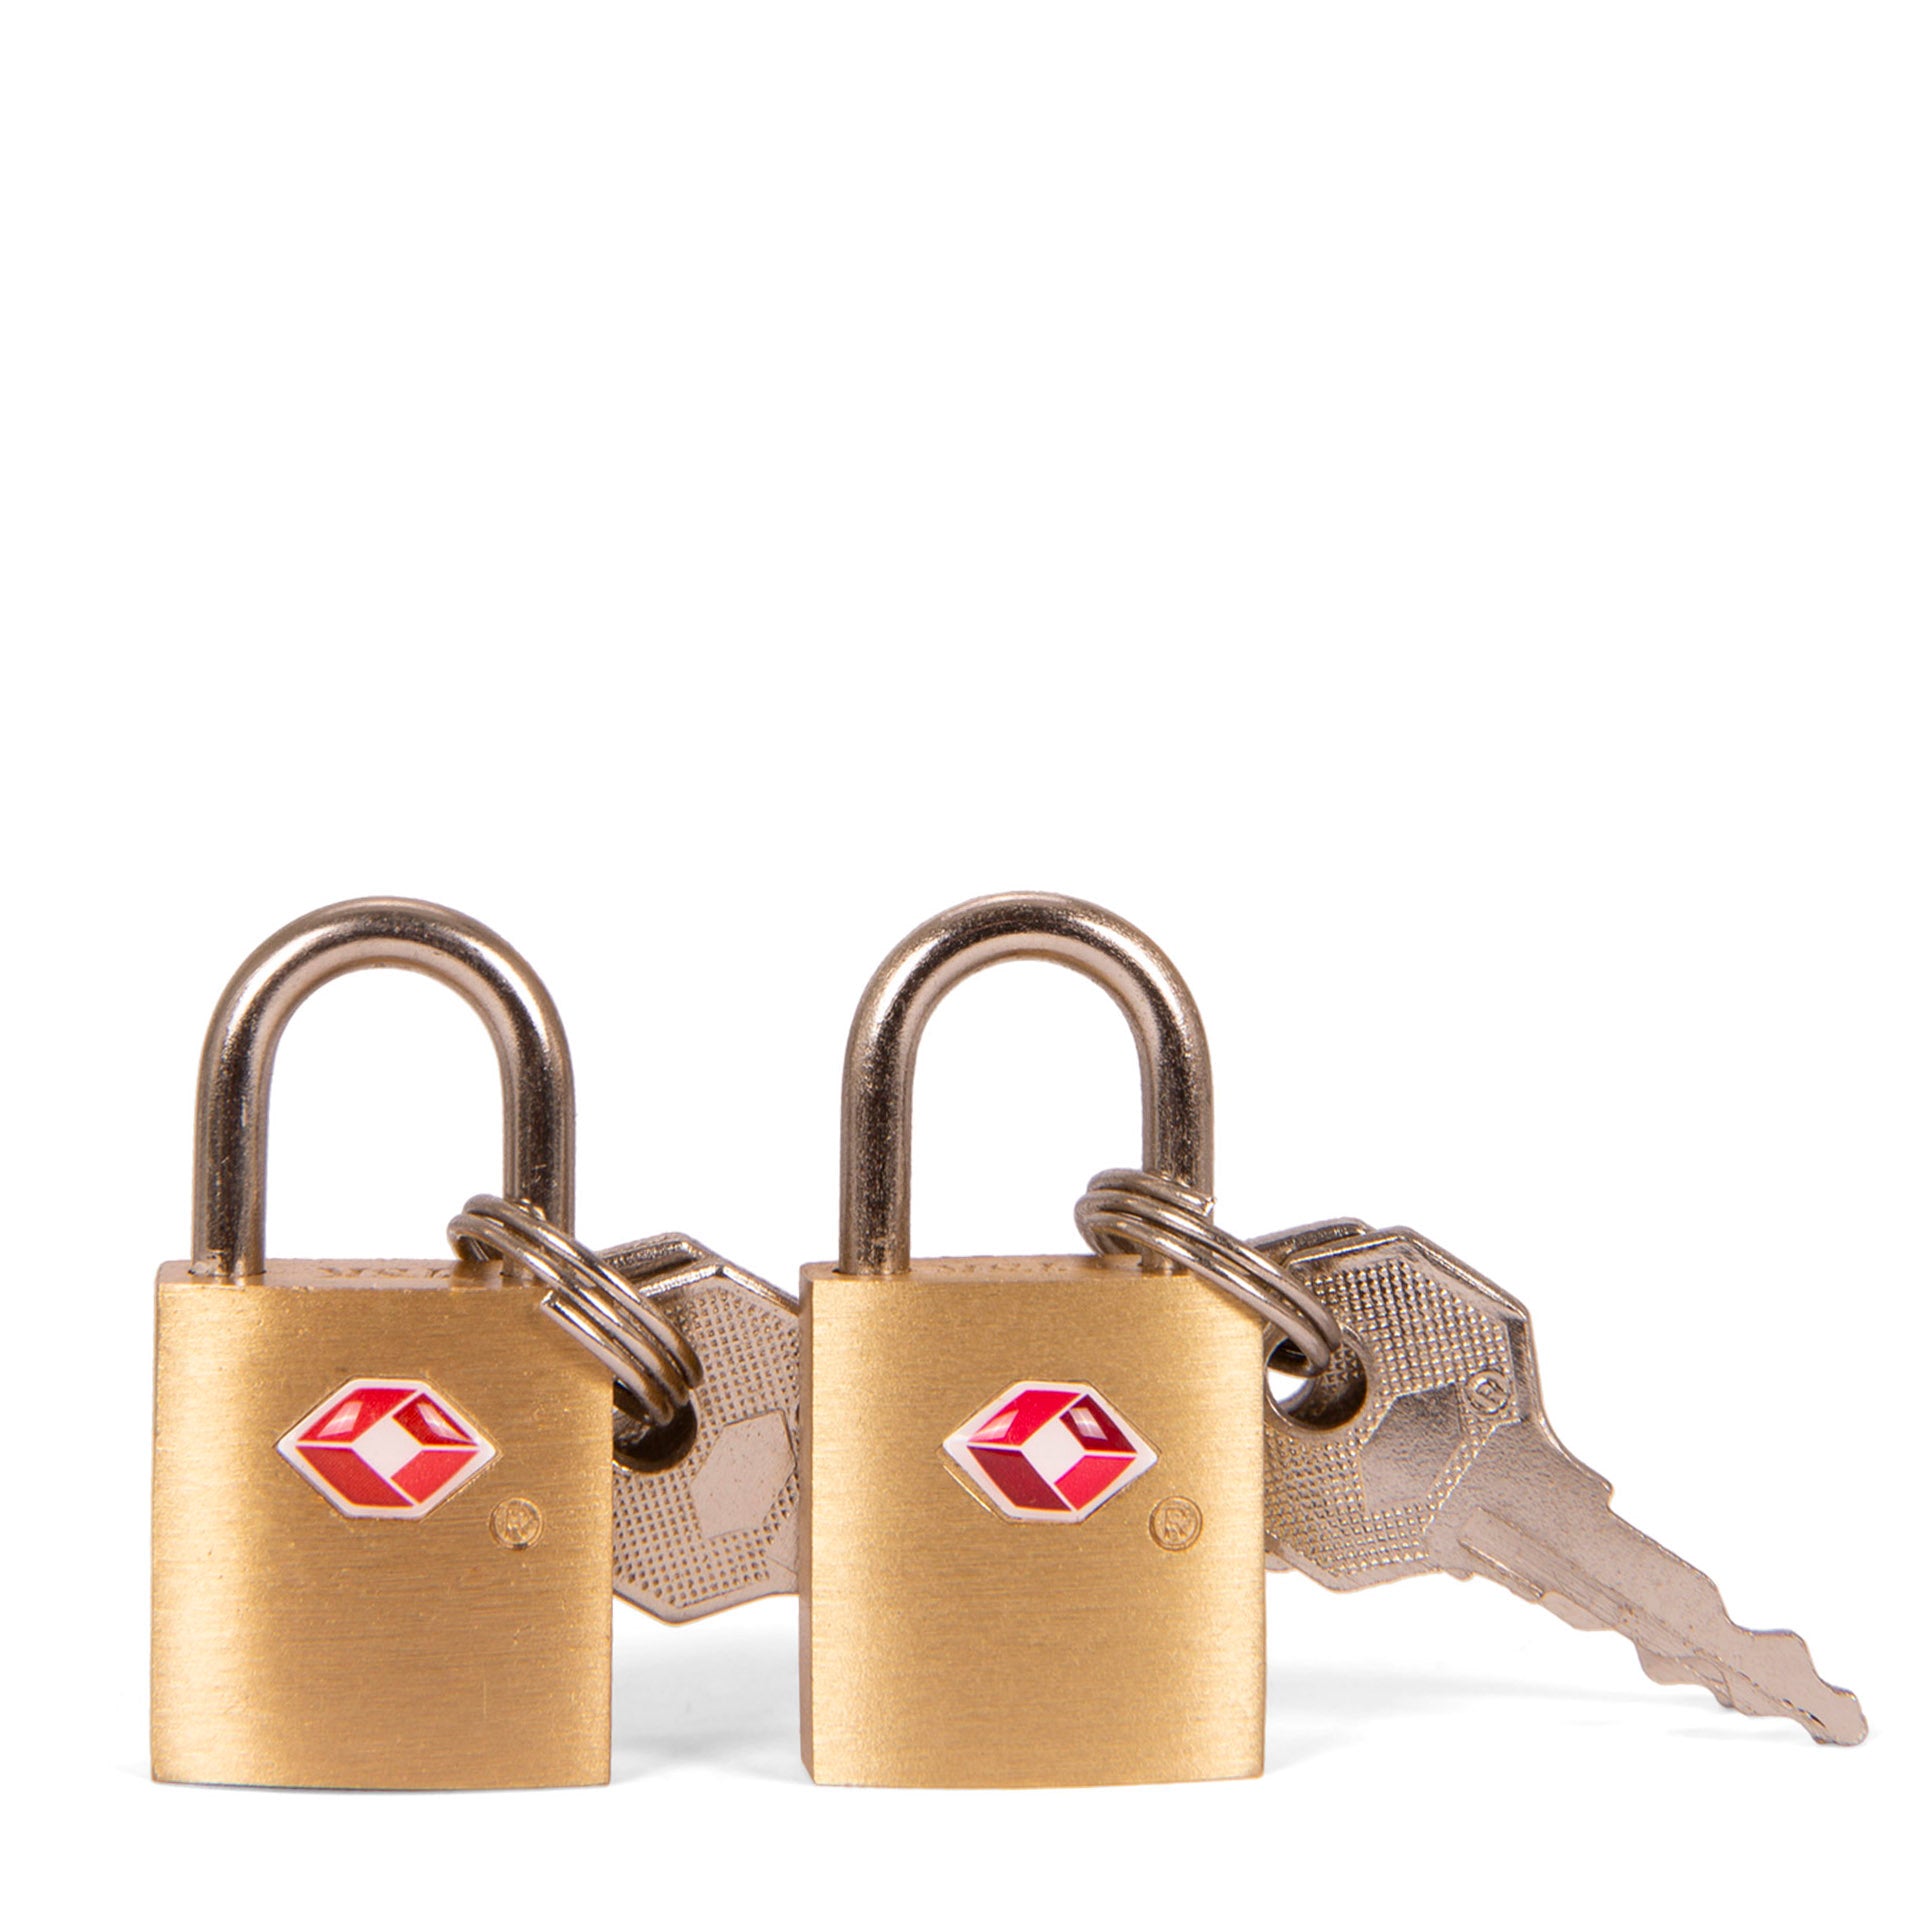 Set of 2 TSA-Accepted Key Locks